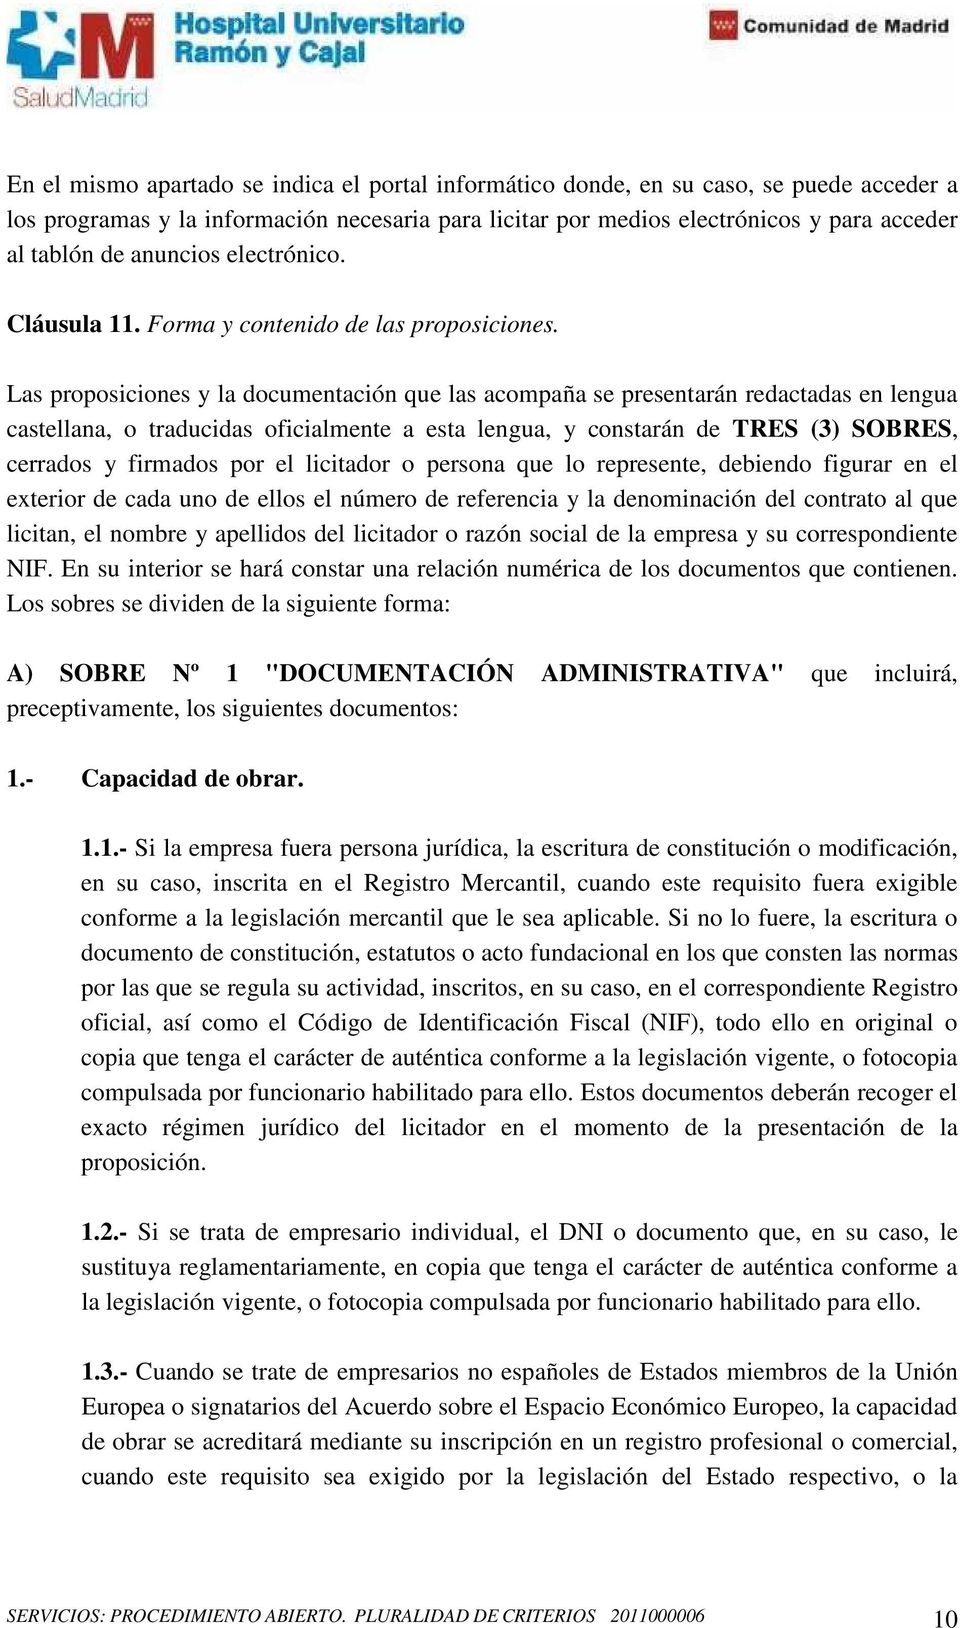 Las proposiciones y la documentación que las acompaña se presentarán redactadas en lengua castellana, o traducidas oficialmente a esta lengua, y constarán de TRES (3) SOBRES, cerrados y firmados por